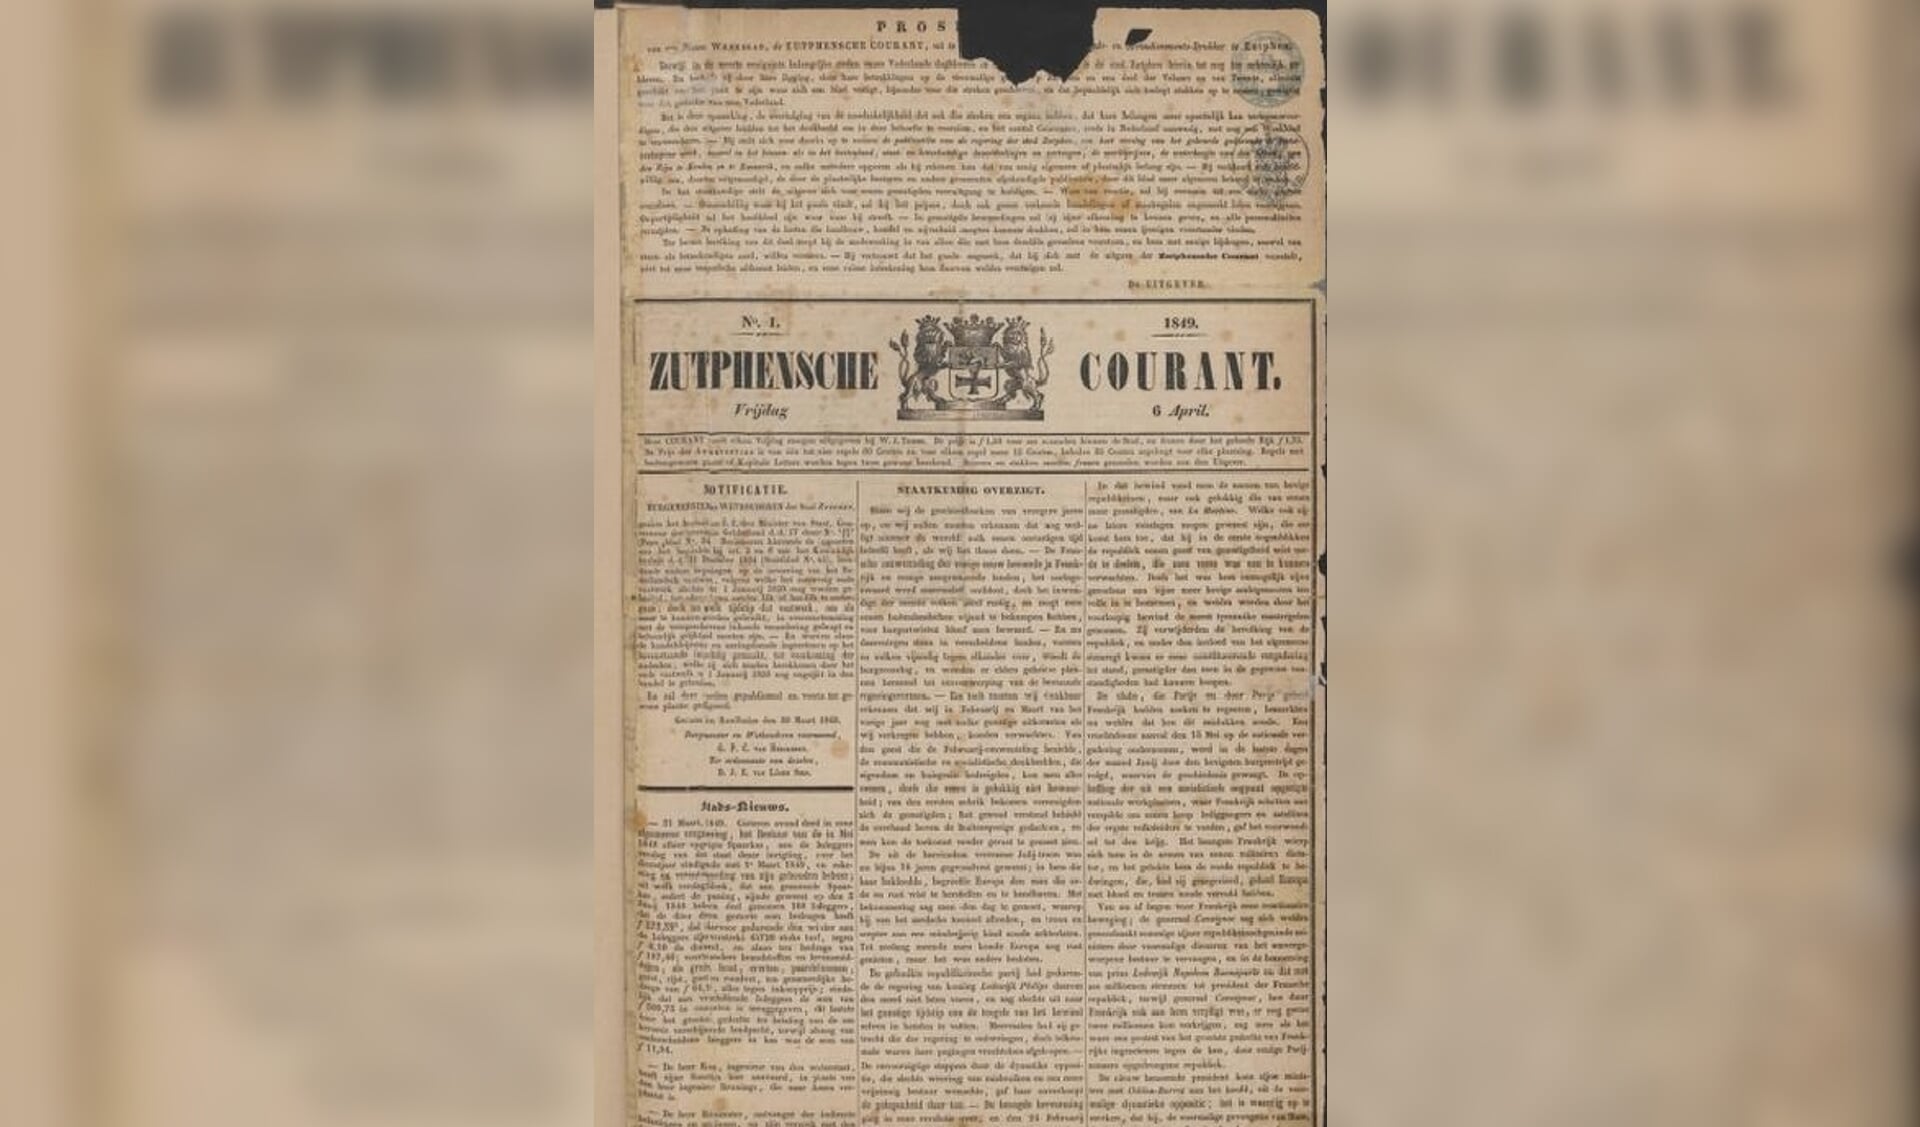 De Zutphense Courant van 6 april 1849. Foto: collectie Erfgoedcentrum Zutphen 